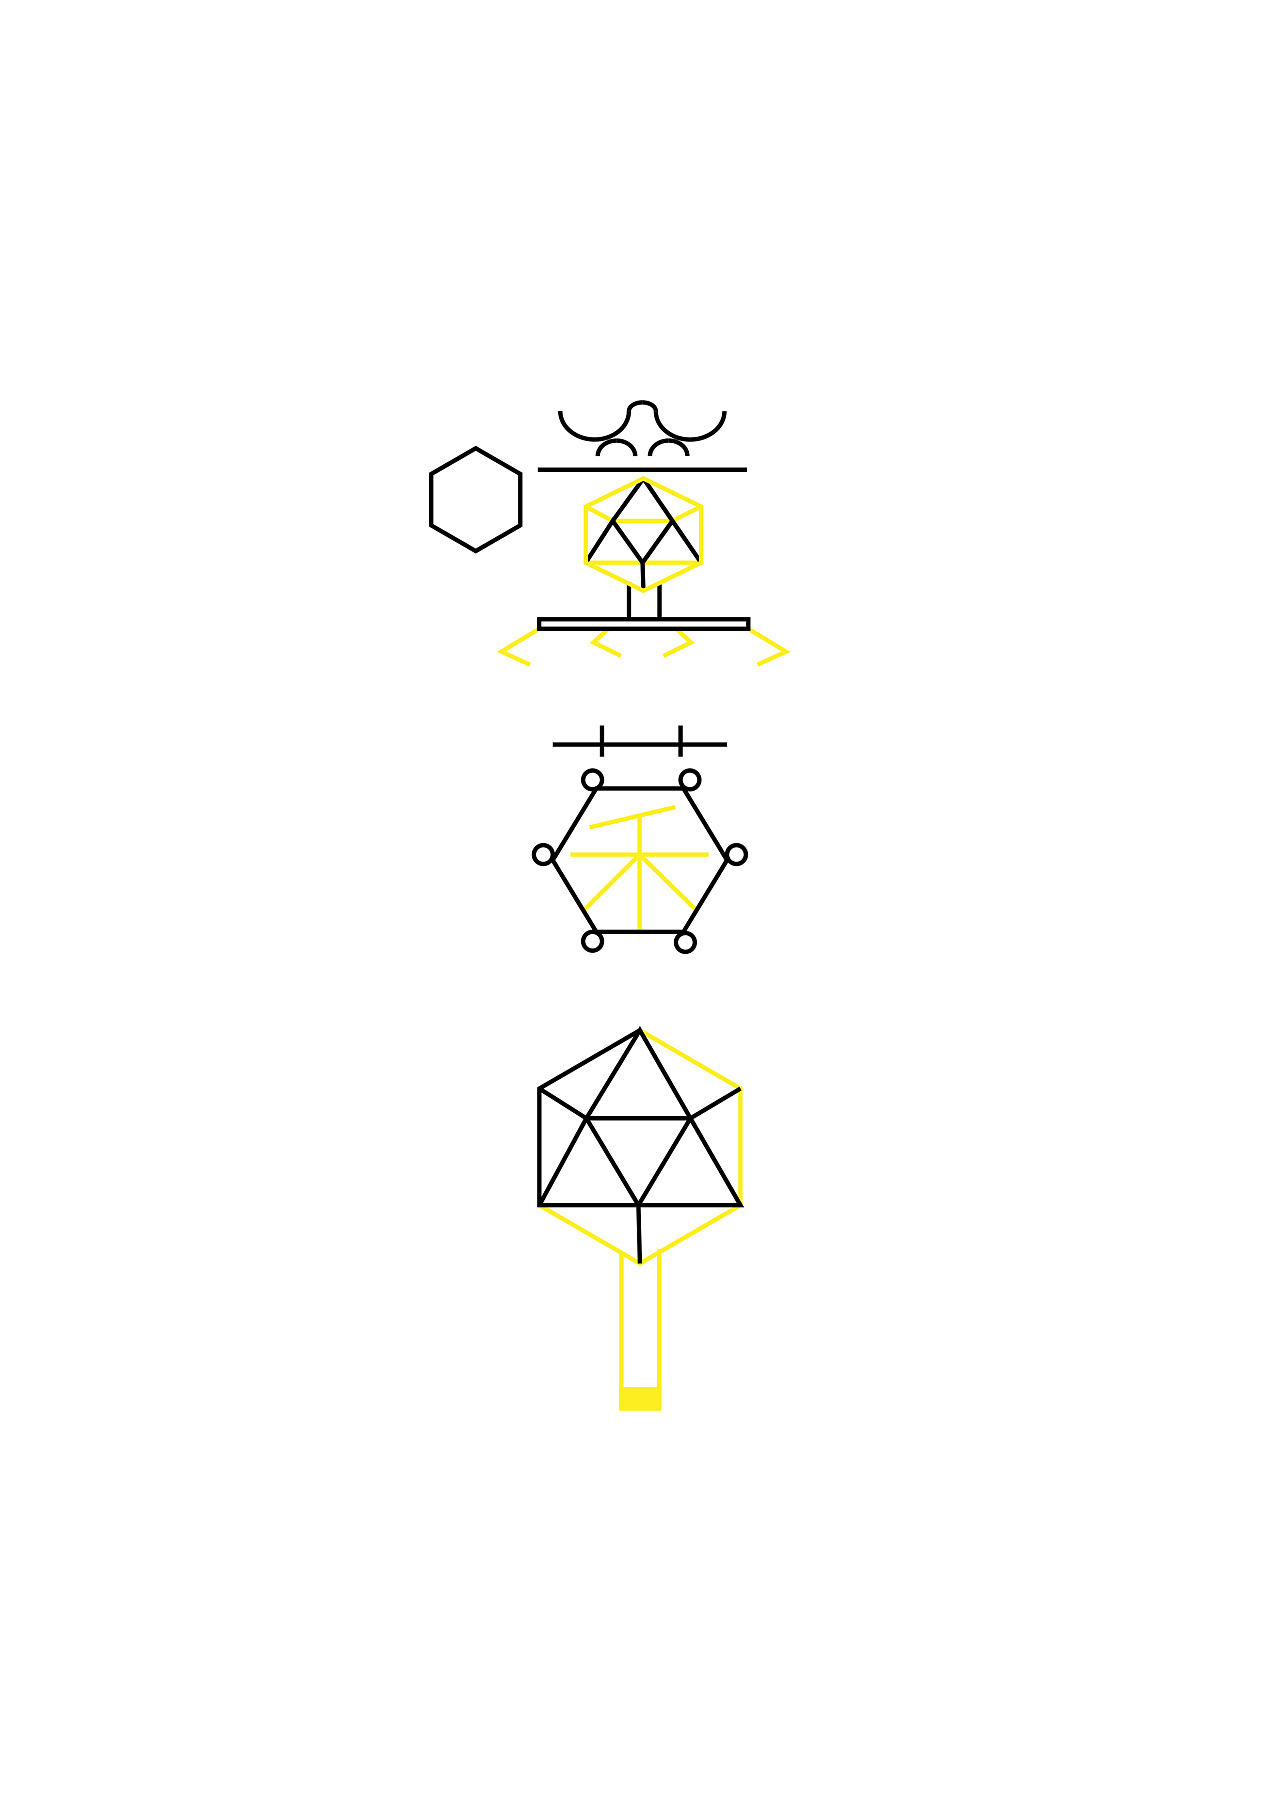 噬菌体logo图片